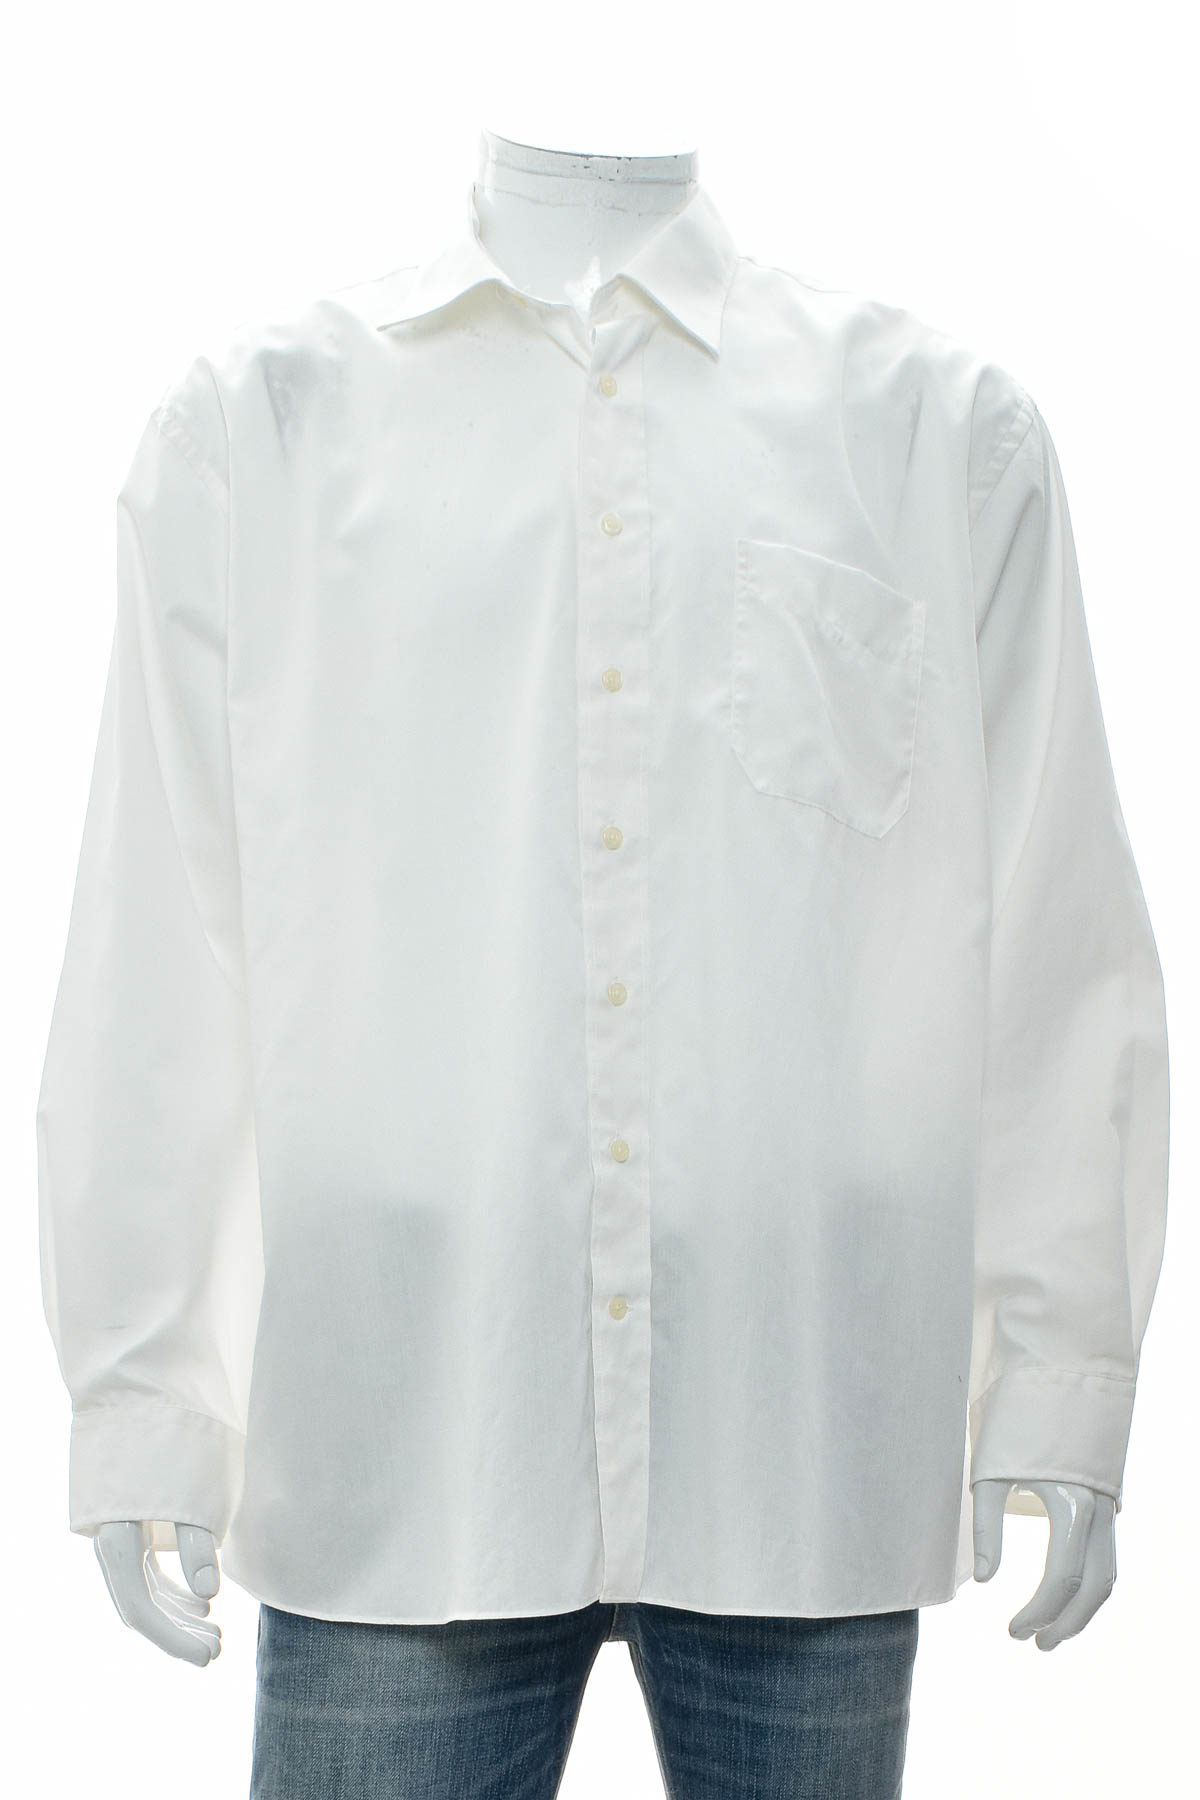 Ανδρικό πουκάμισο - WESTBURY - 0